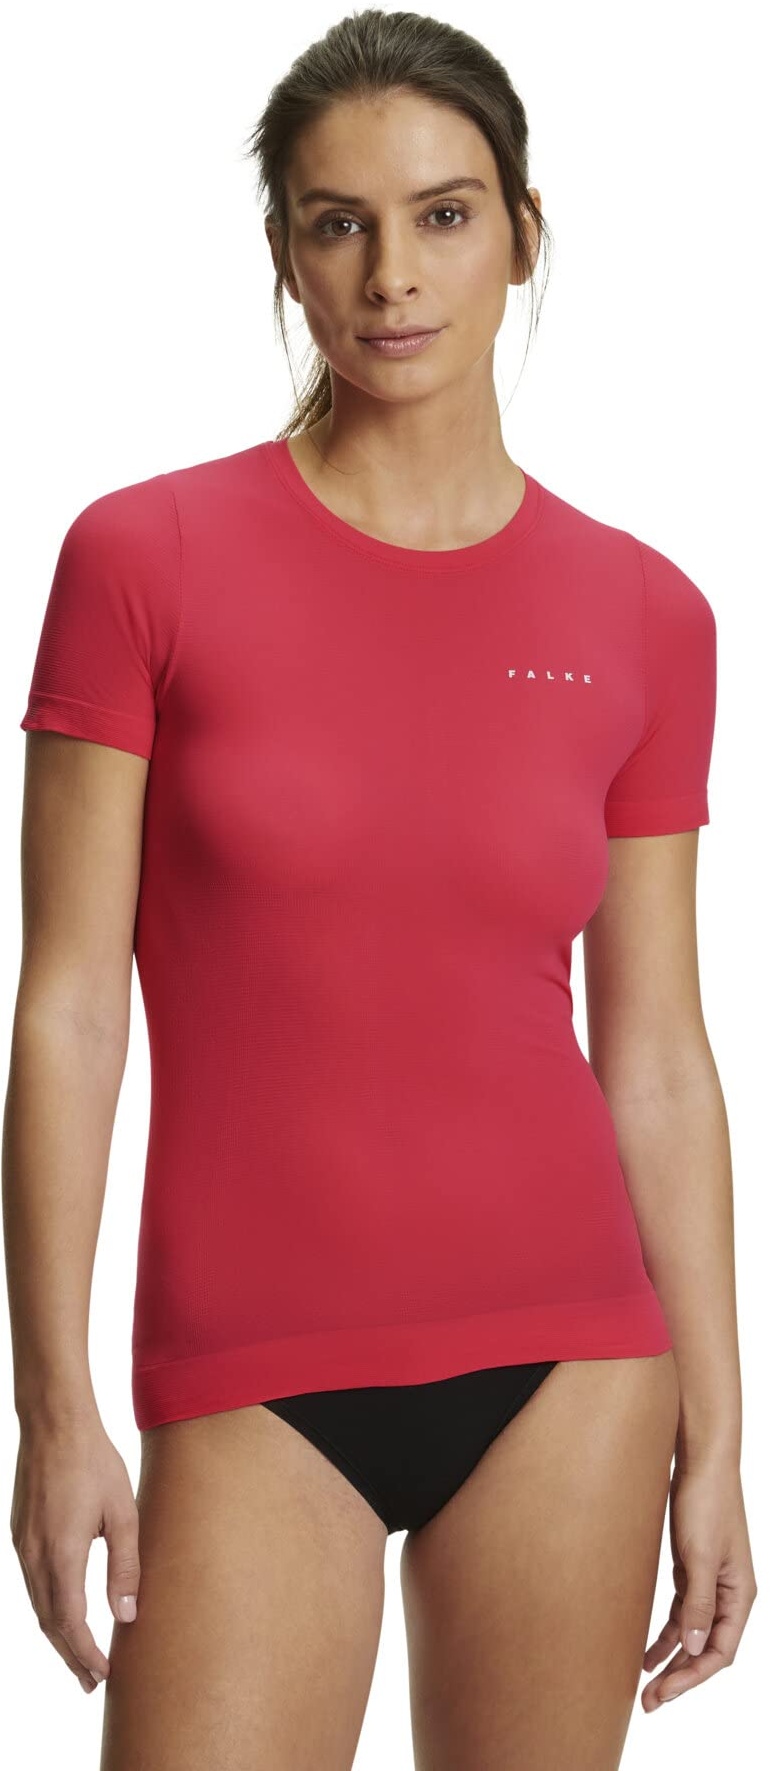 FALKE Damen Baselayer-Shirt Ultralight Cool Round Neck W S/S SH Funktionsmaterial schnelltrocknend 1 Stück, Rot (Rose 8564), M